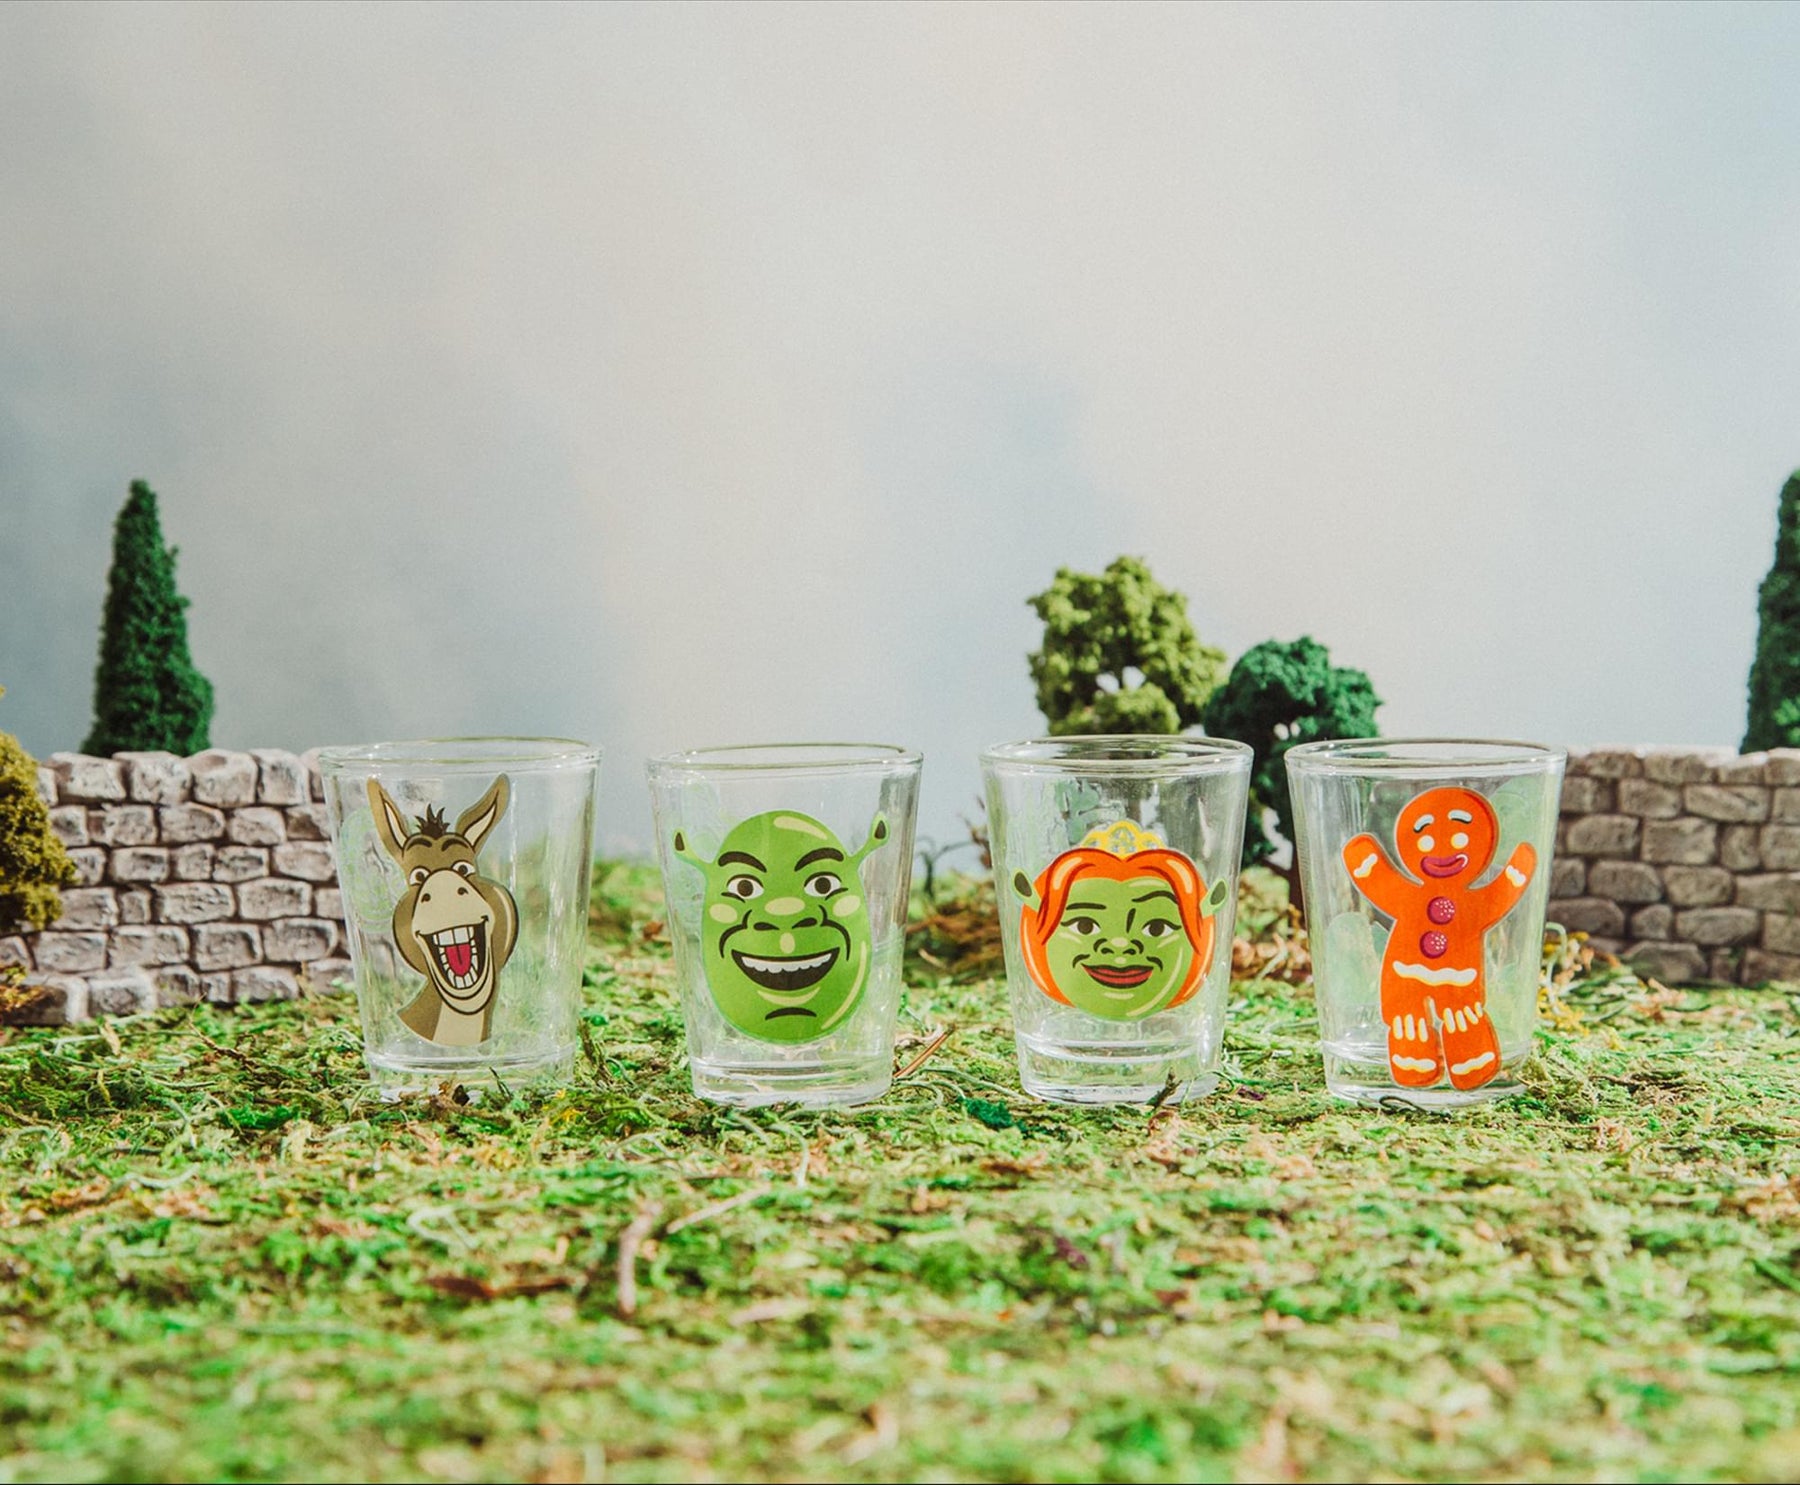 Silver Buffalo Shrek Characters 1.5-ounce Mini Shot Glasses